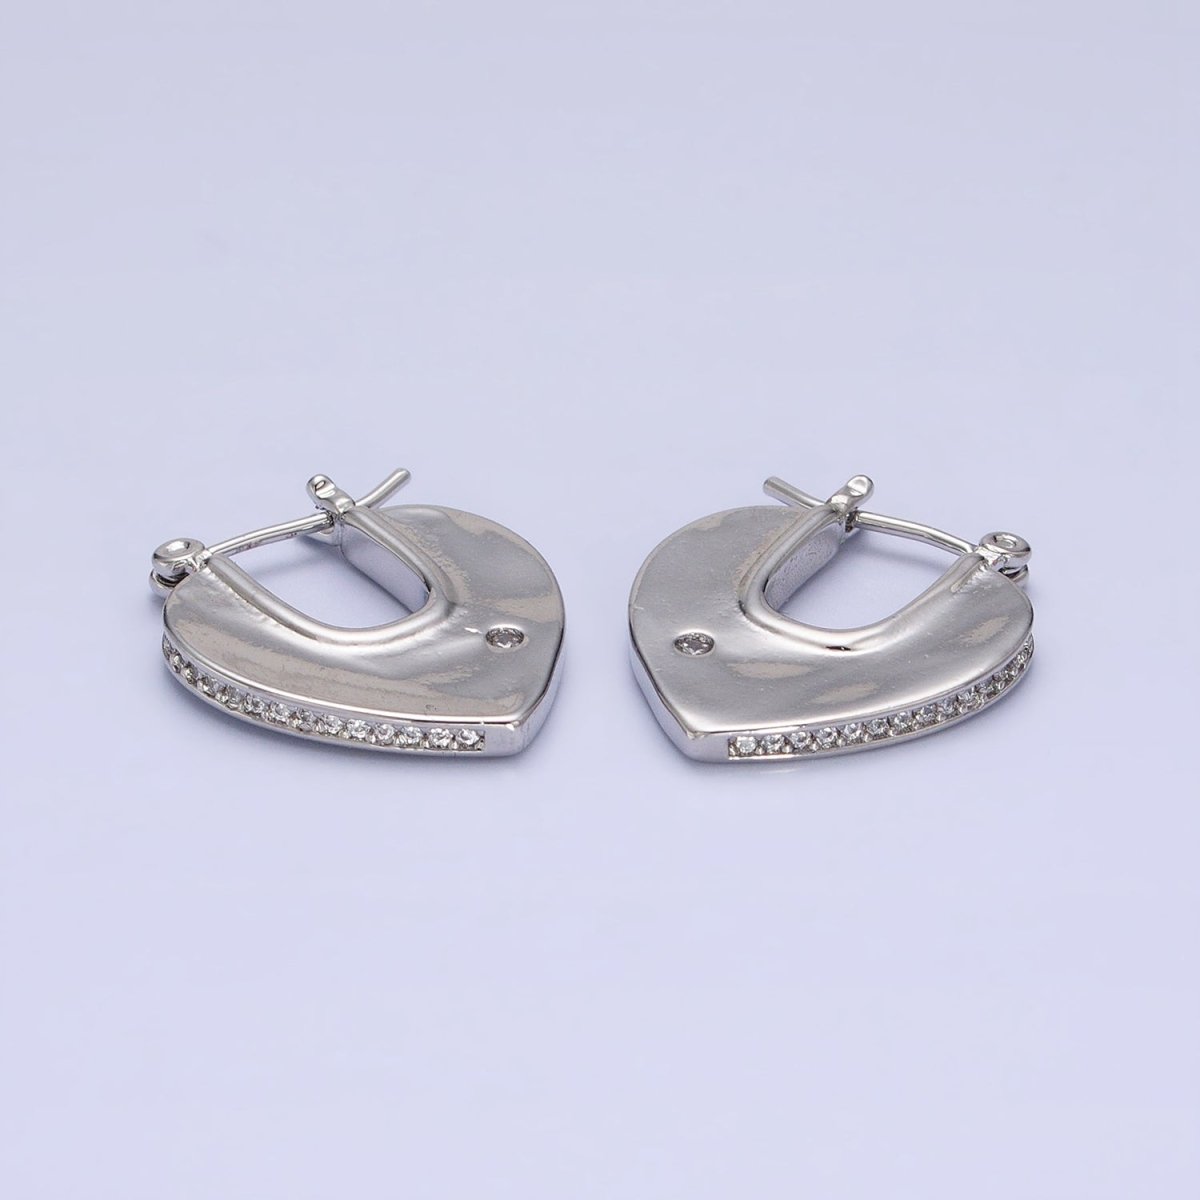 Geometric Hoops Heart Triangle Hoop Earrings Statement Jewelry 14k Gold Filled Earrings AB727 AB728 - DLUXCA